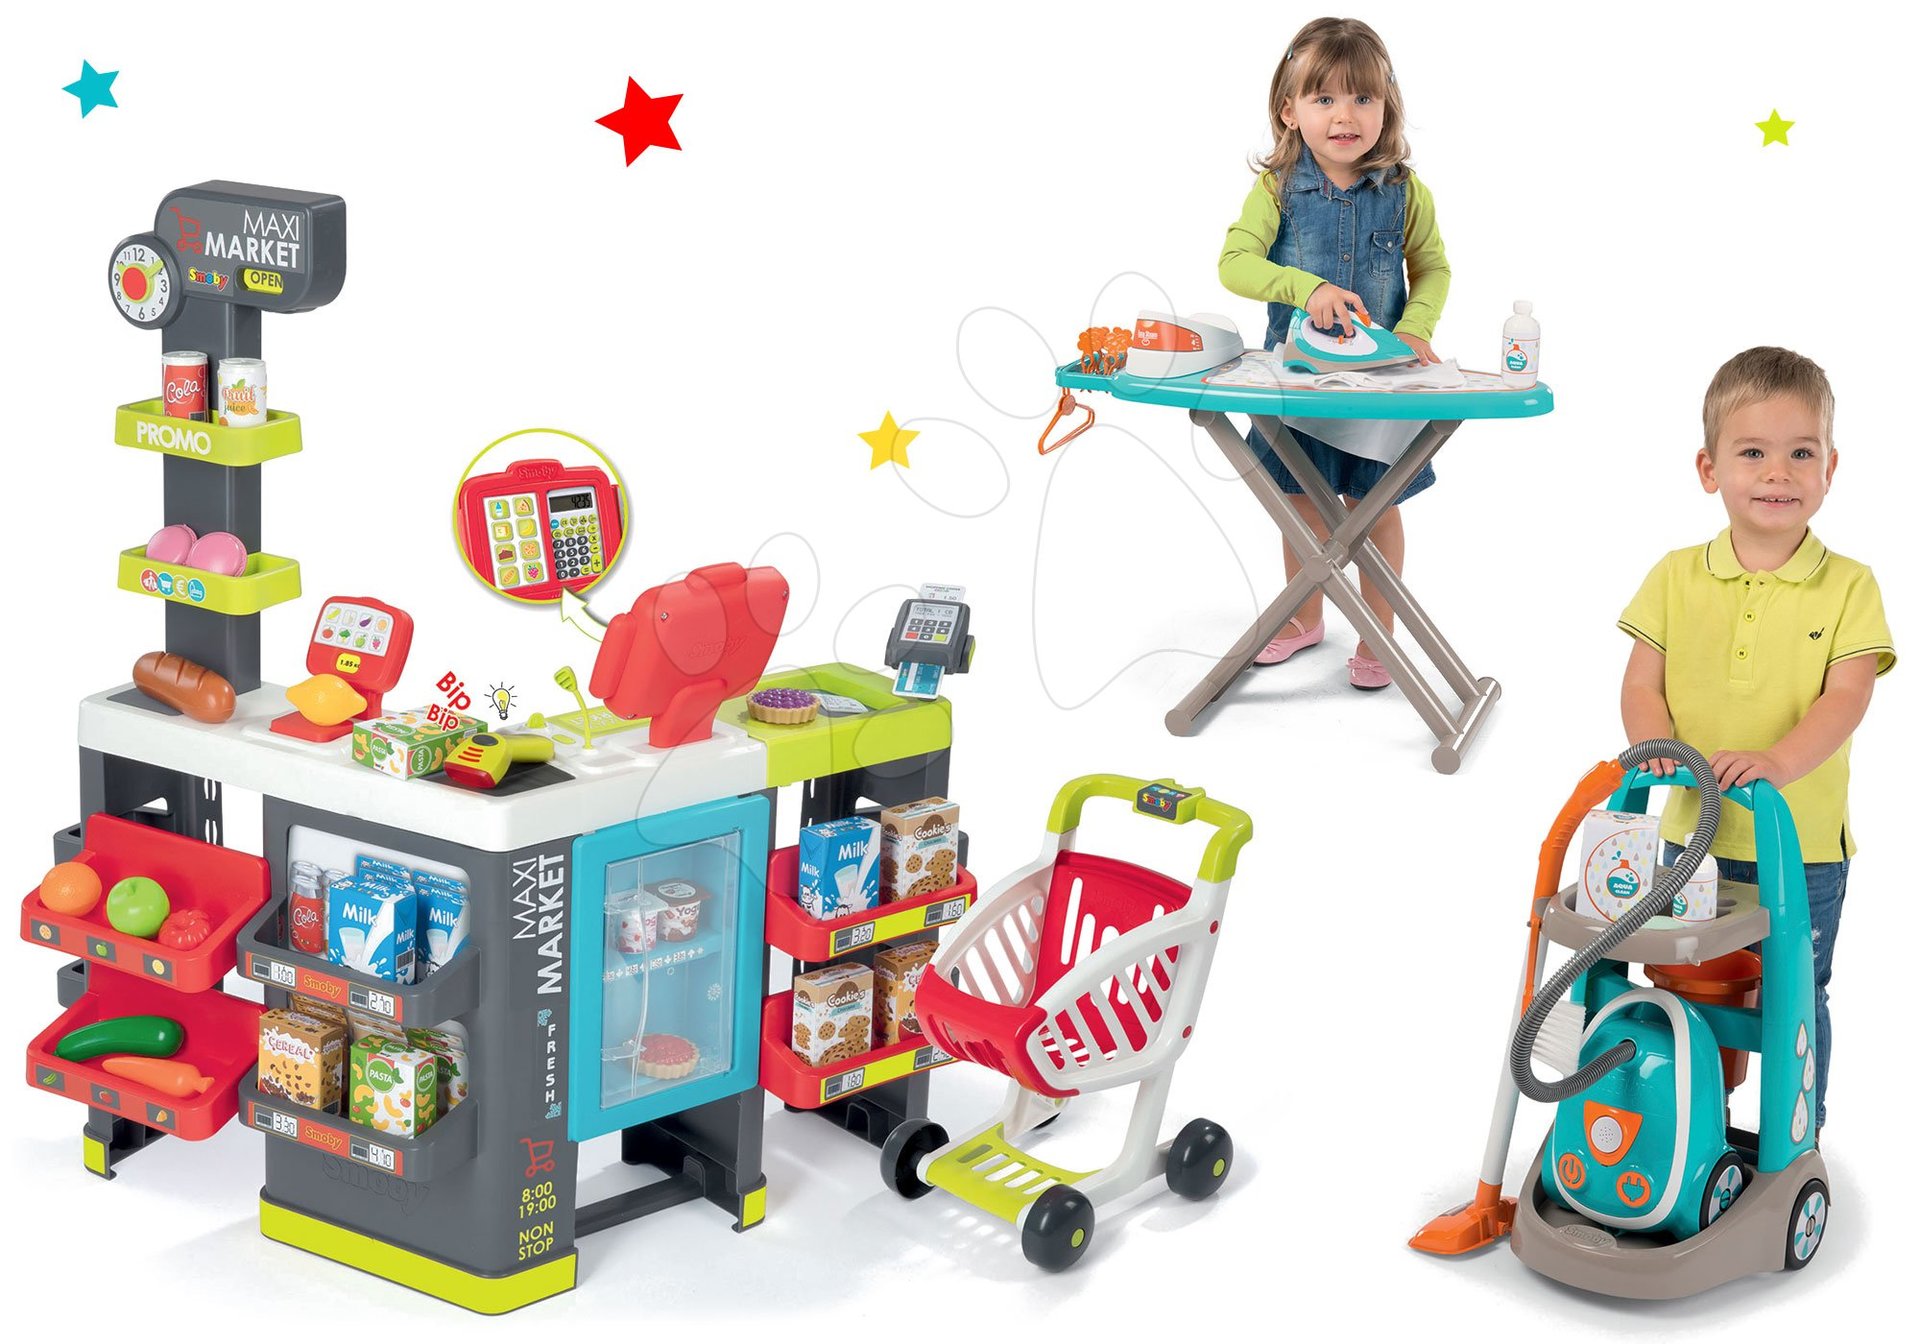 Obchody pro děti sety - Set obchod smíšené zboží Maximarket Smoby a úklidový vozík s elektronickým vysavačem a žehlicím prknem